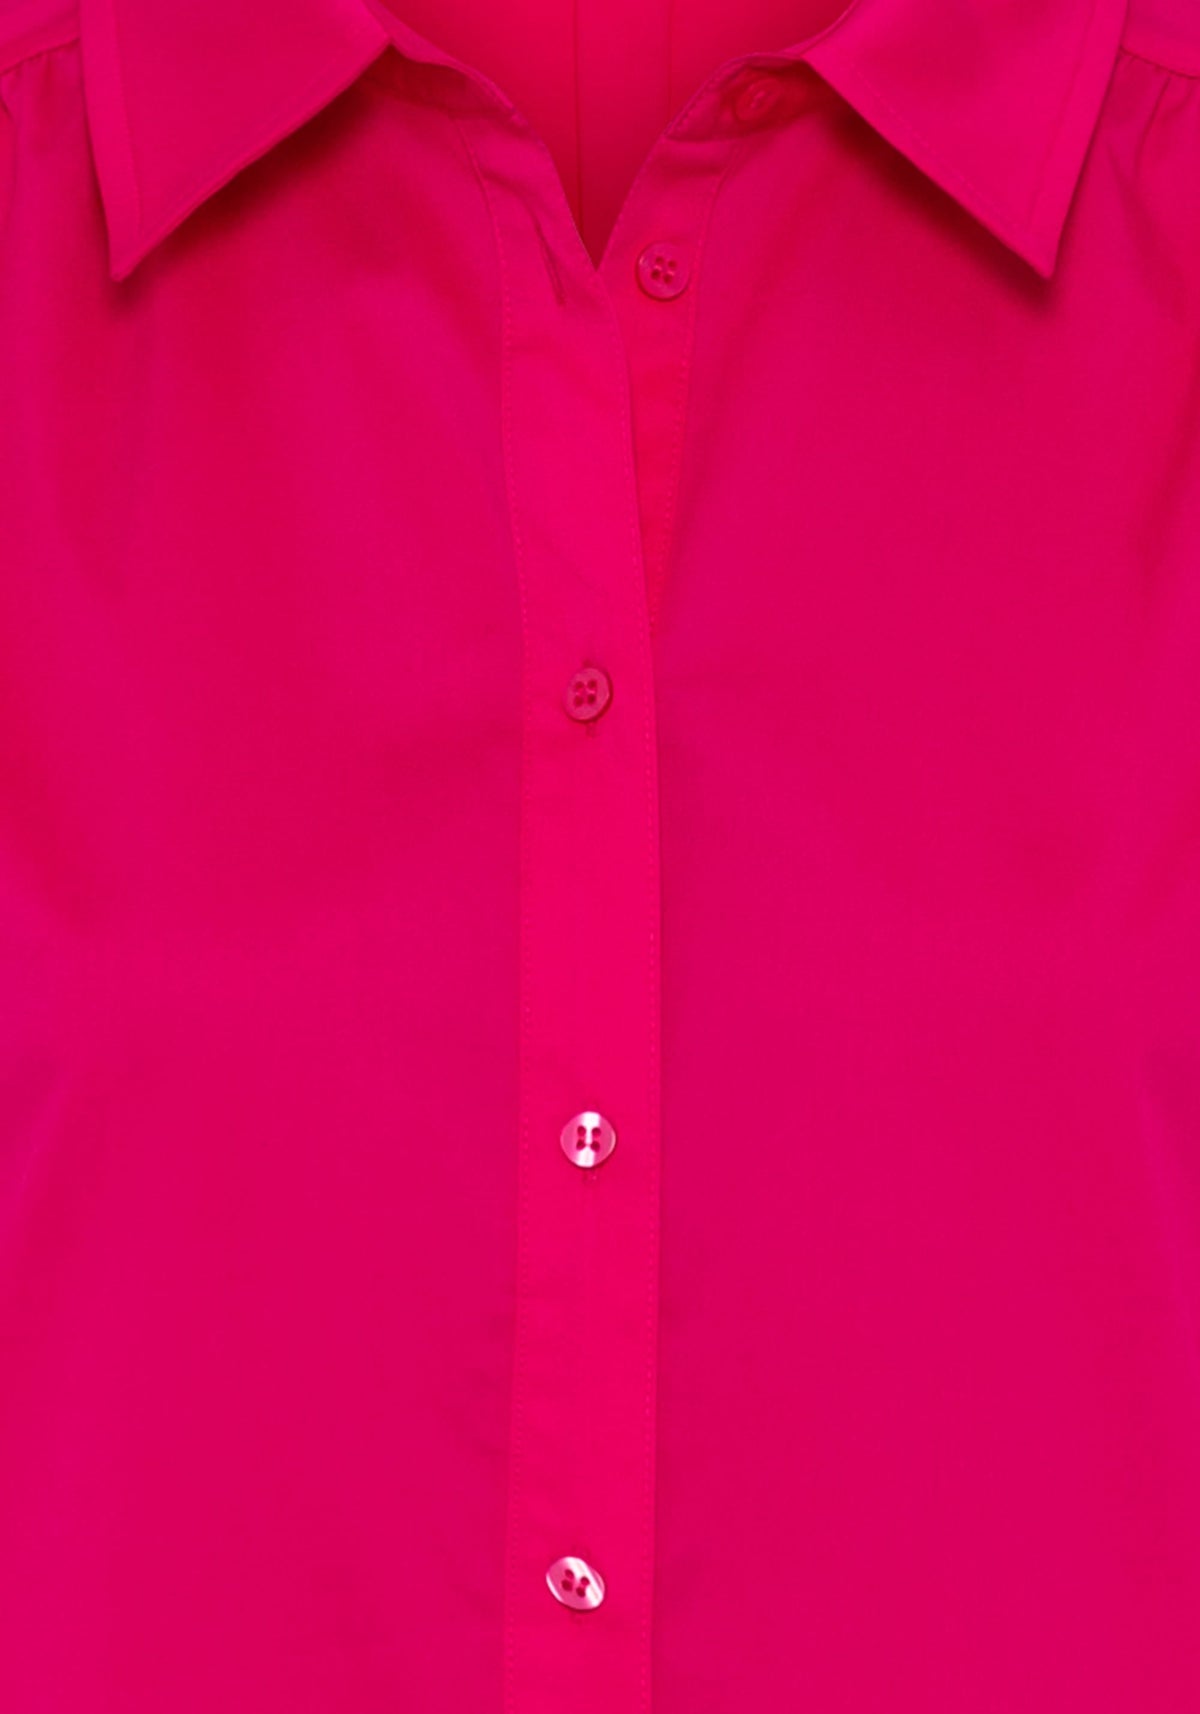 Cotton Blend 3/4 Sleeve Poplin Shirt Dress